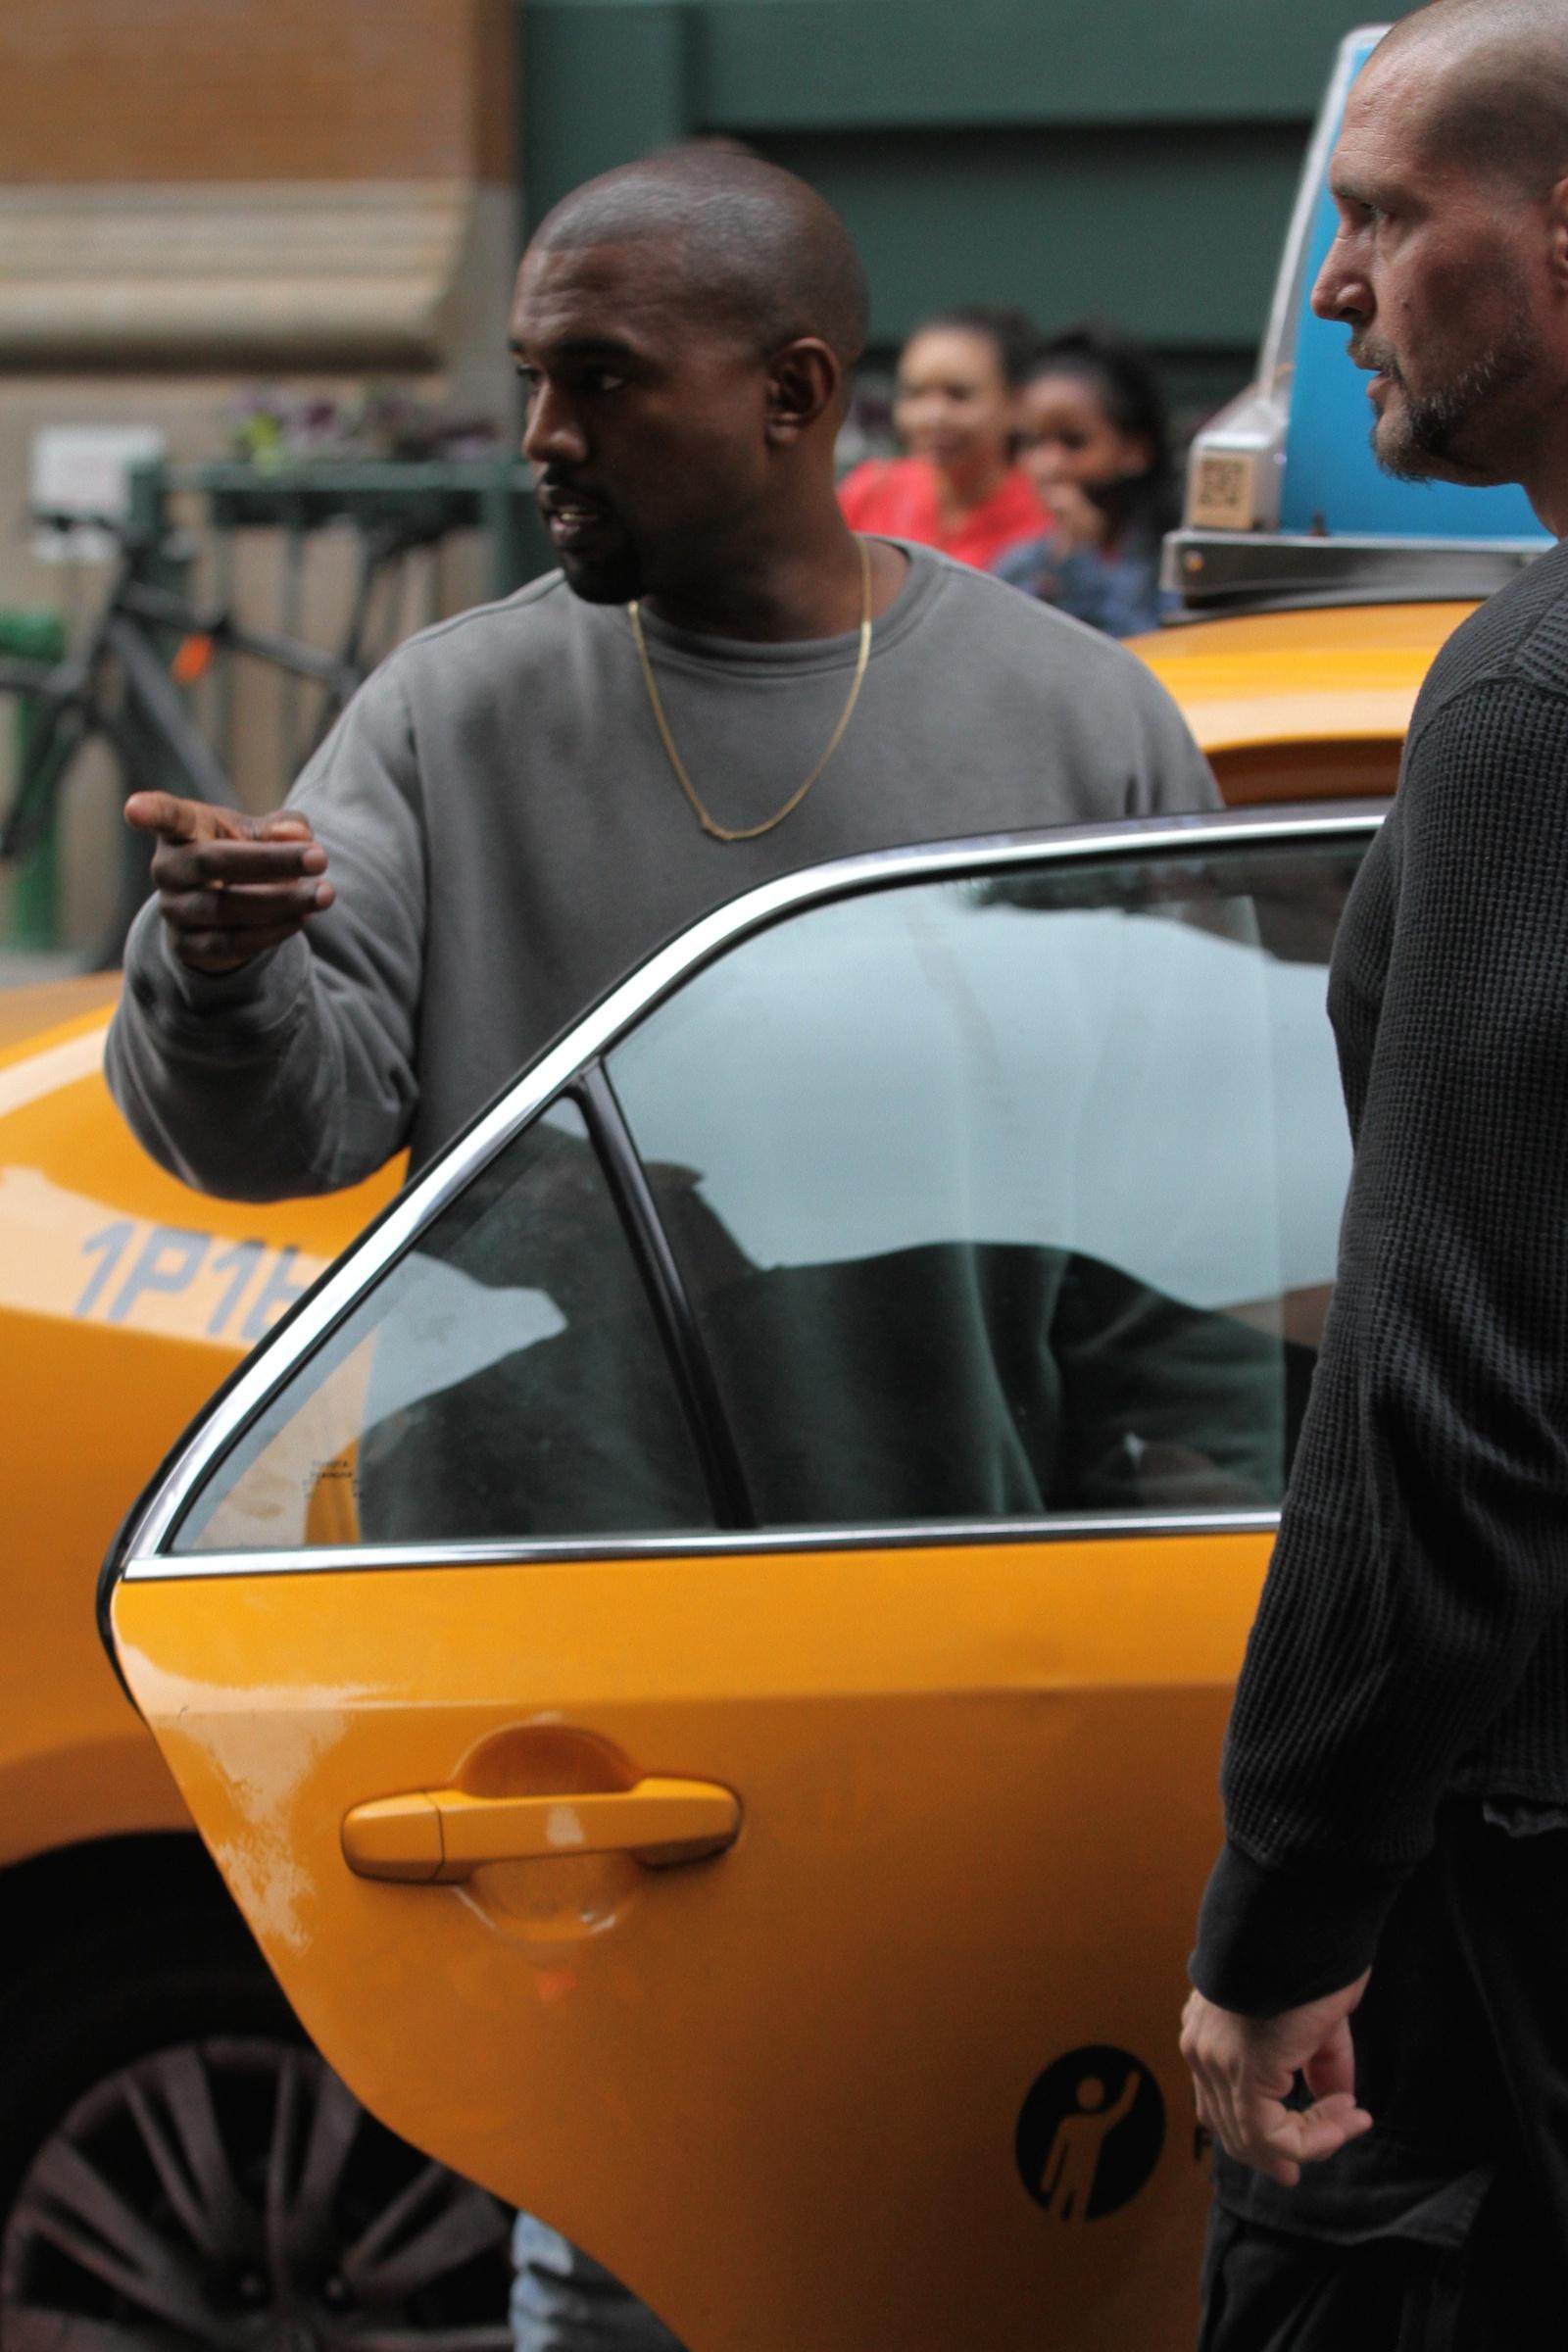 Kanye West: Snakeskin Backpack in NYC: Photo 2596229, Kanye West Photos